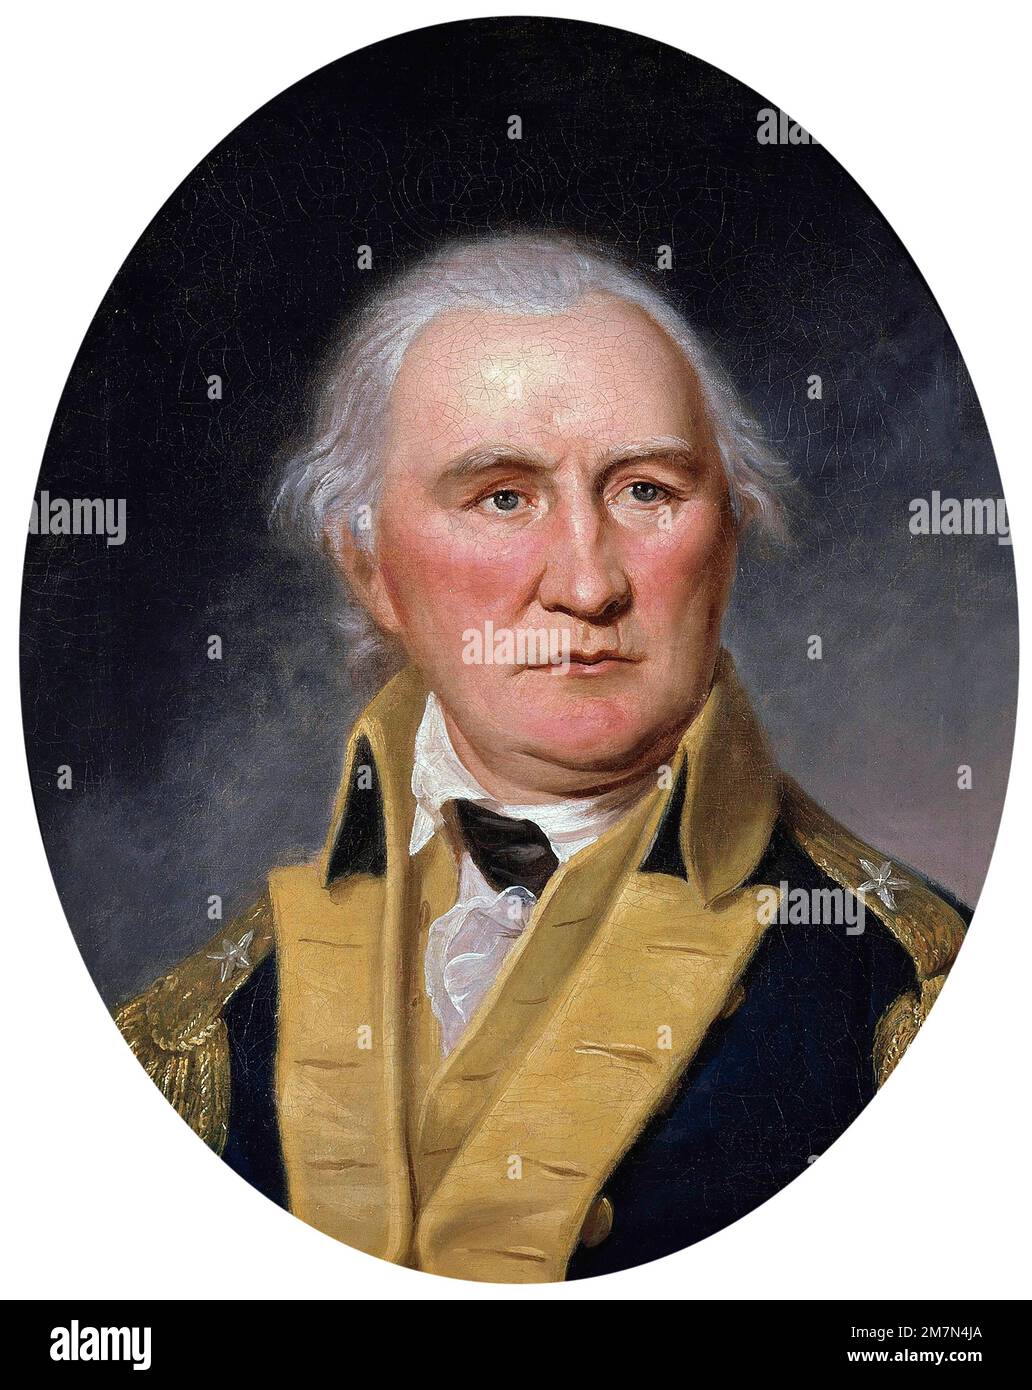 Daniel Morgan. Portrait du soldat et homme politique américain de Virginie, Daniel Morgan (c. 1735/1736-1802) par Charles Willson Peale, huile sur toile, c. 1794 Banque D'Images